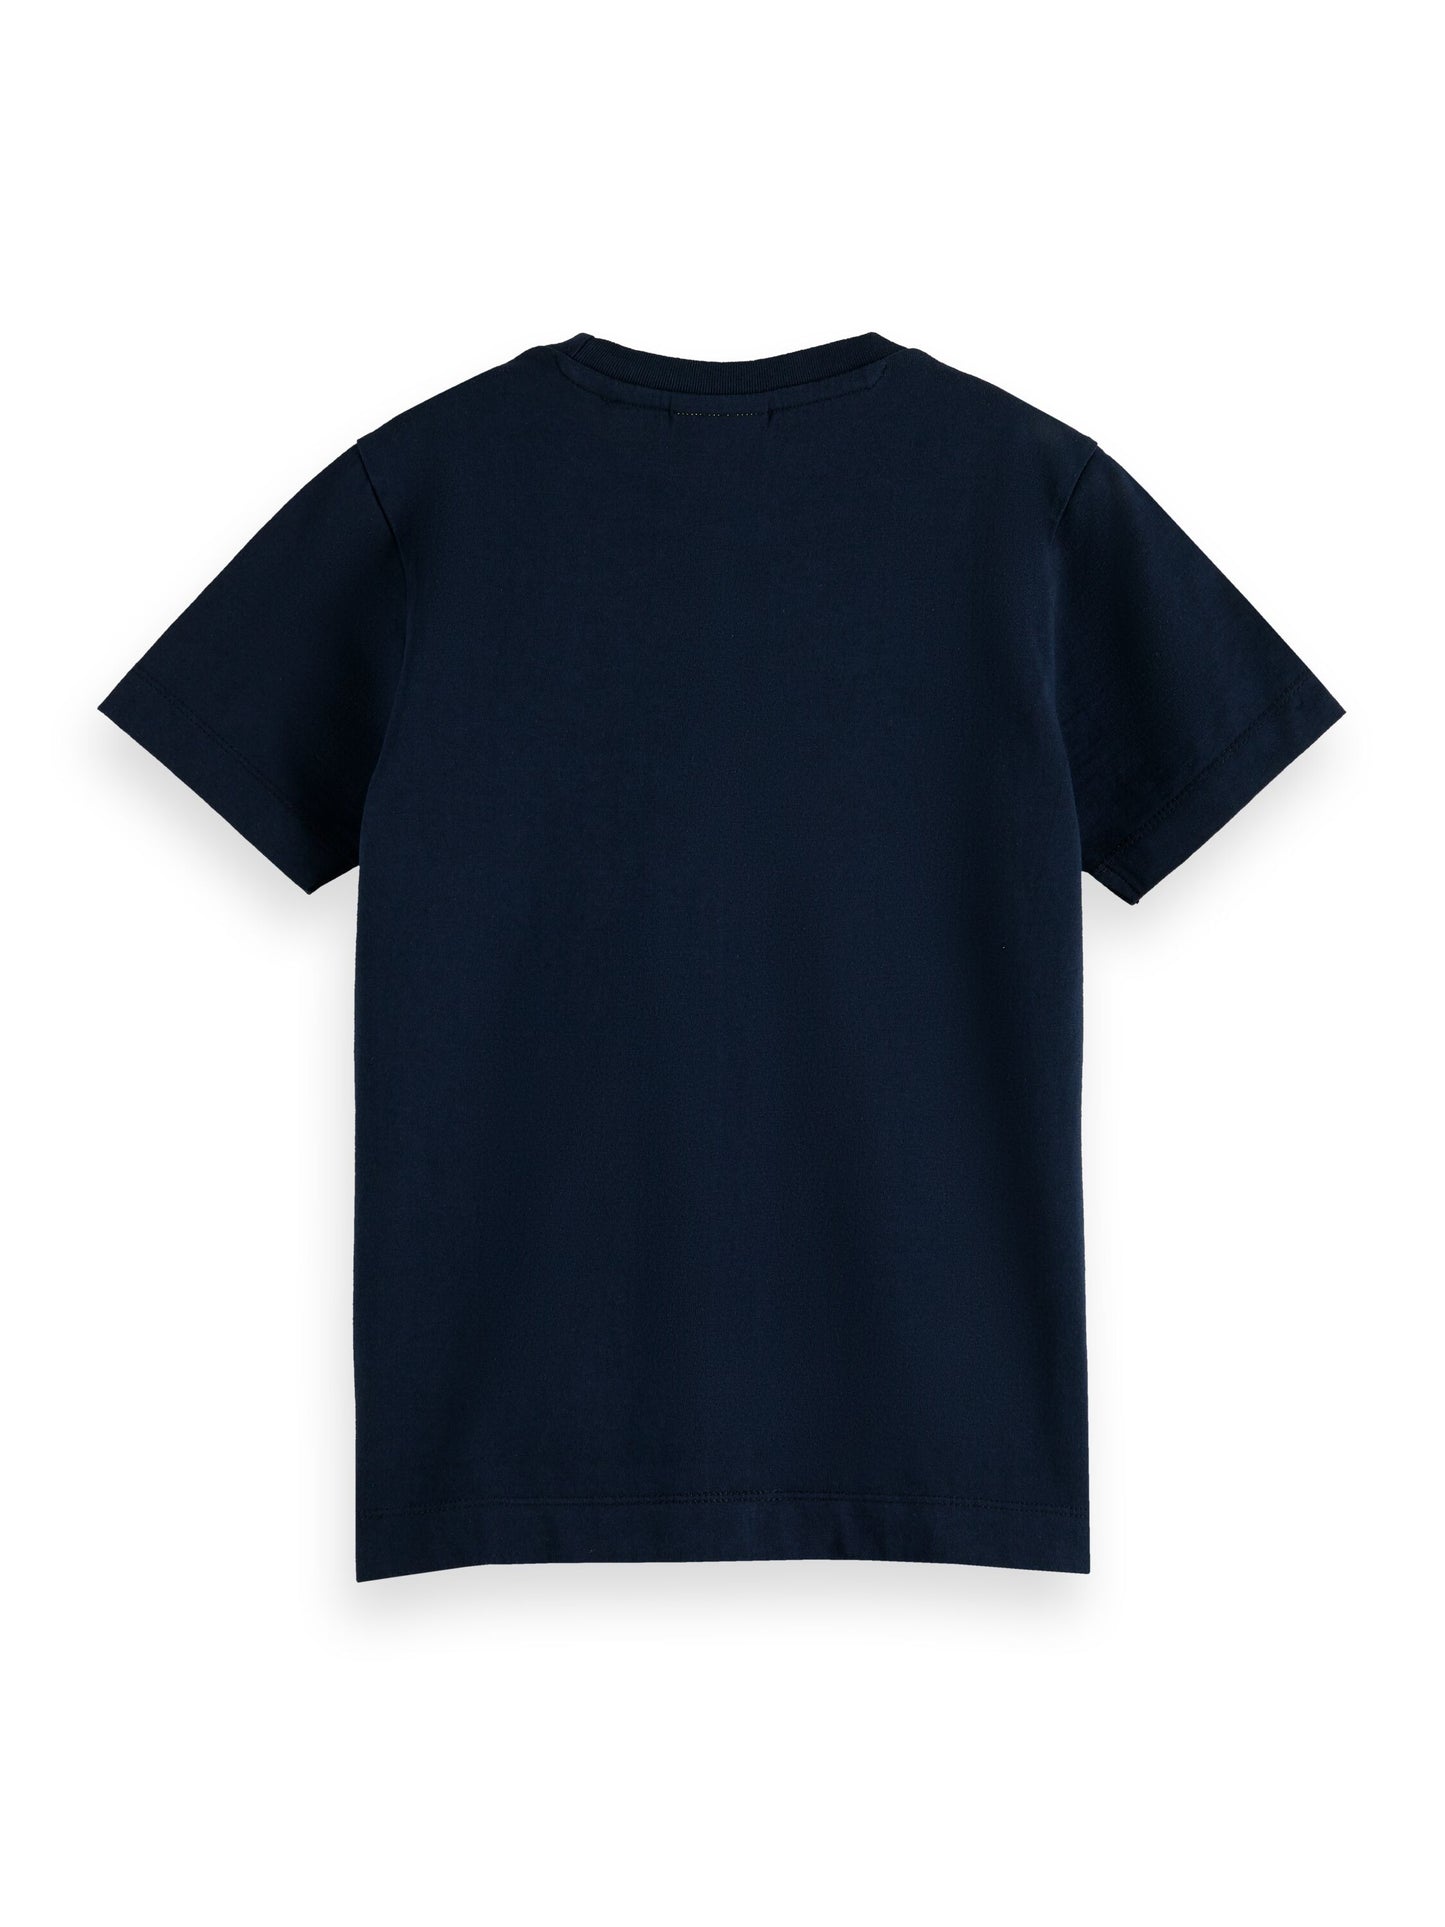 Scotch & Soda Boys T-Shirt_Navy 170523-0002